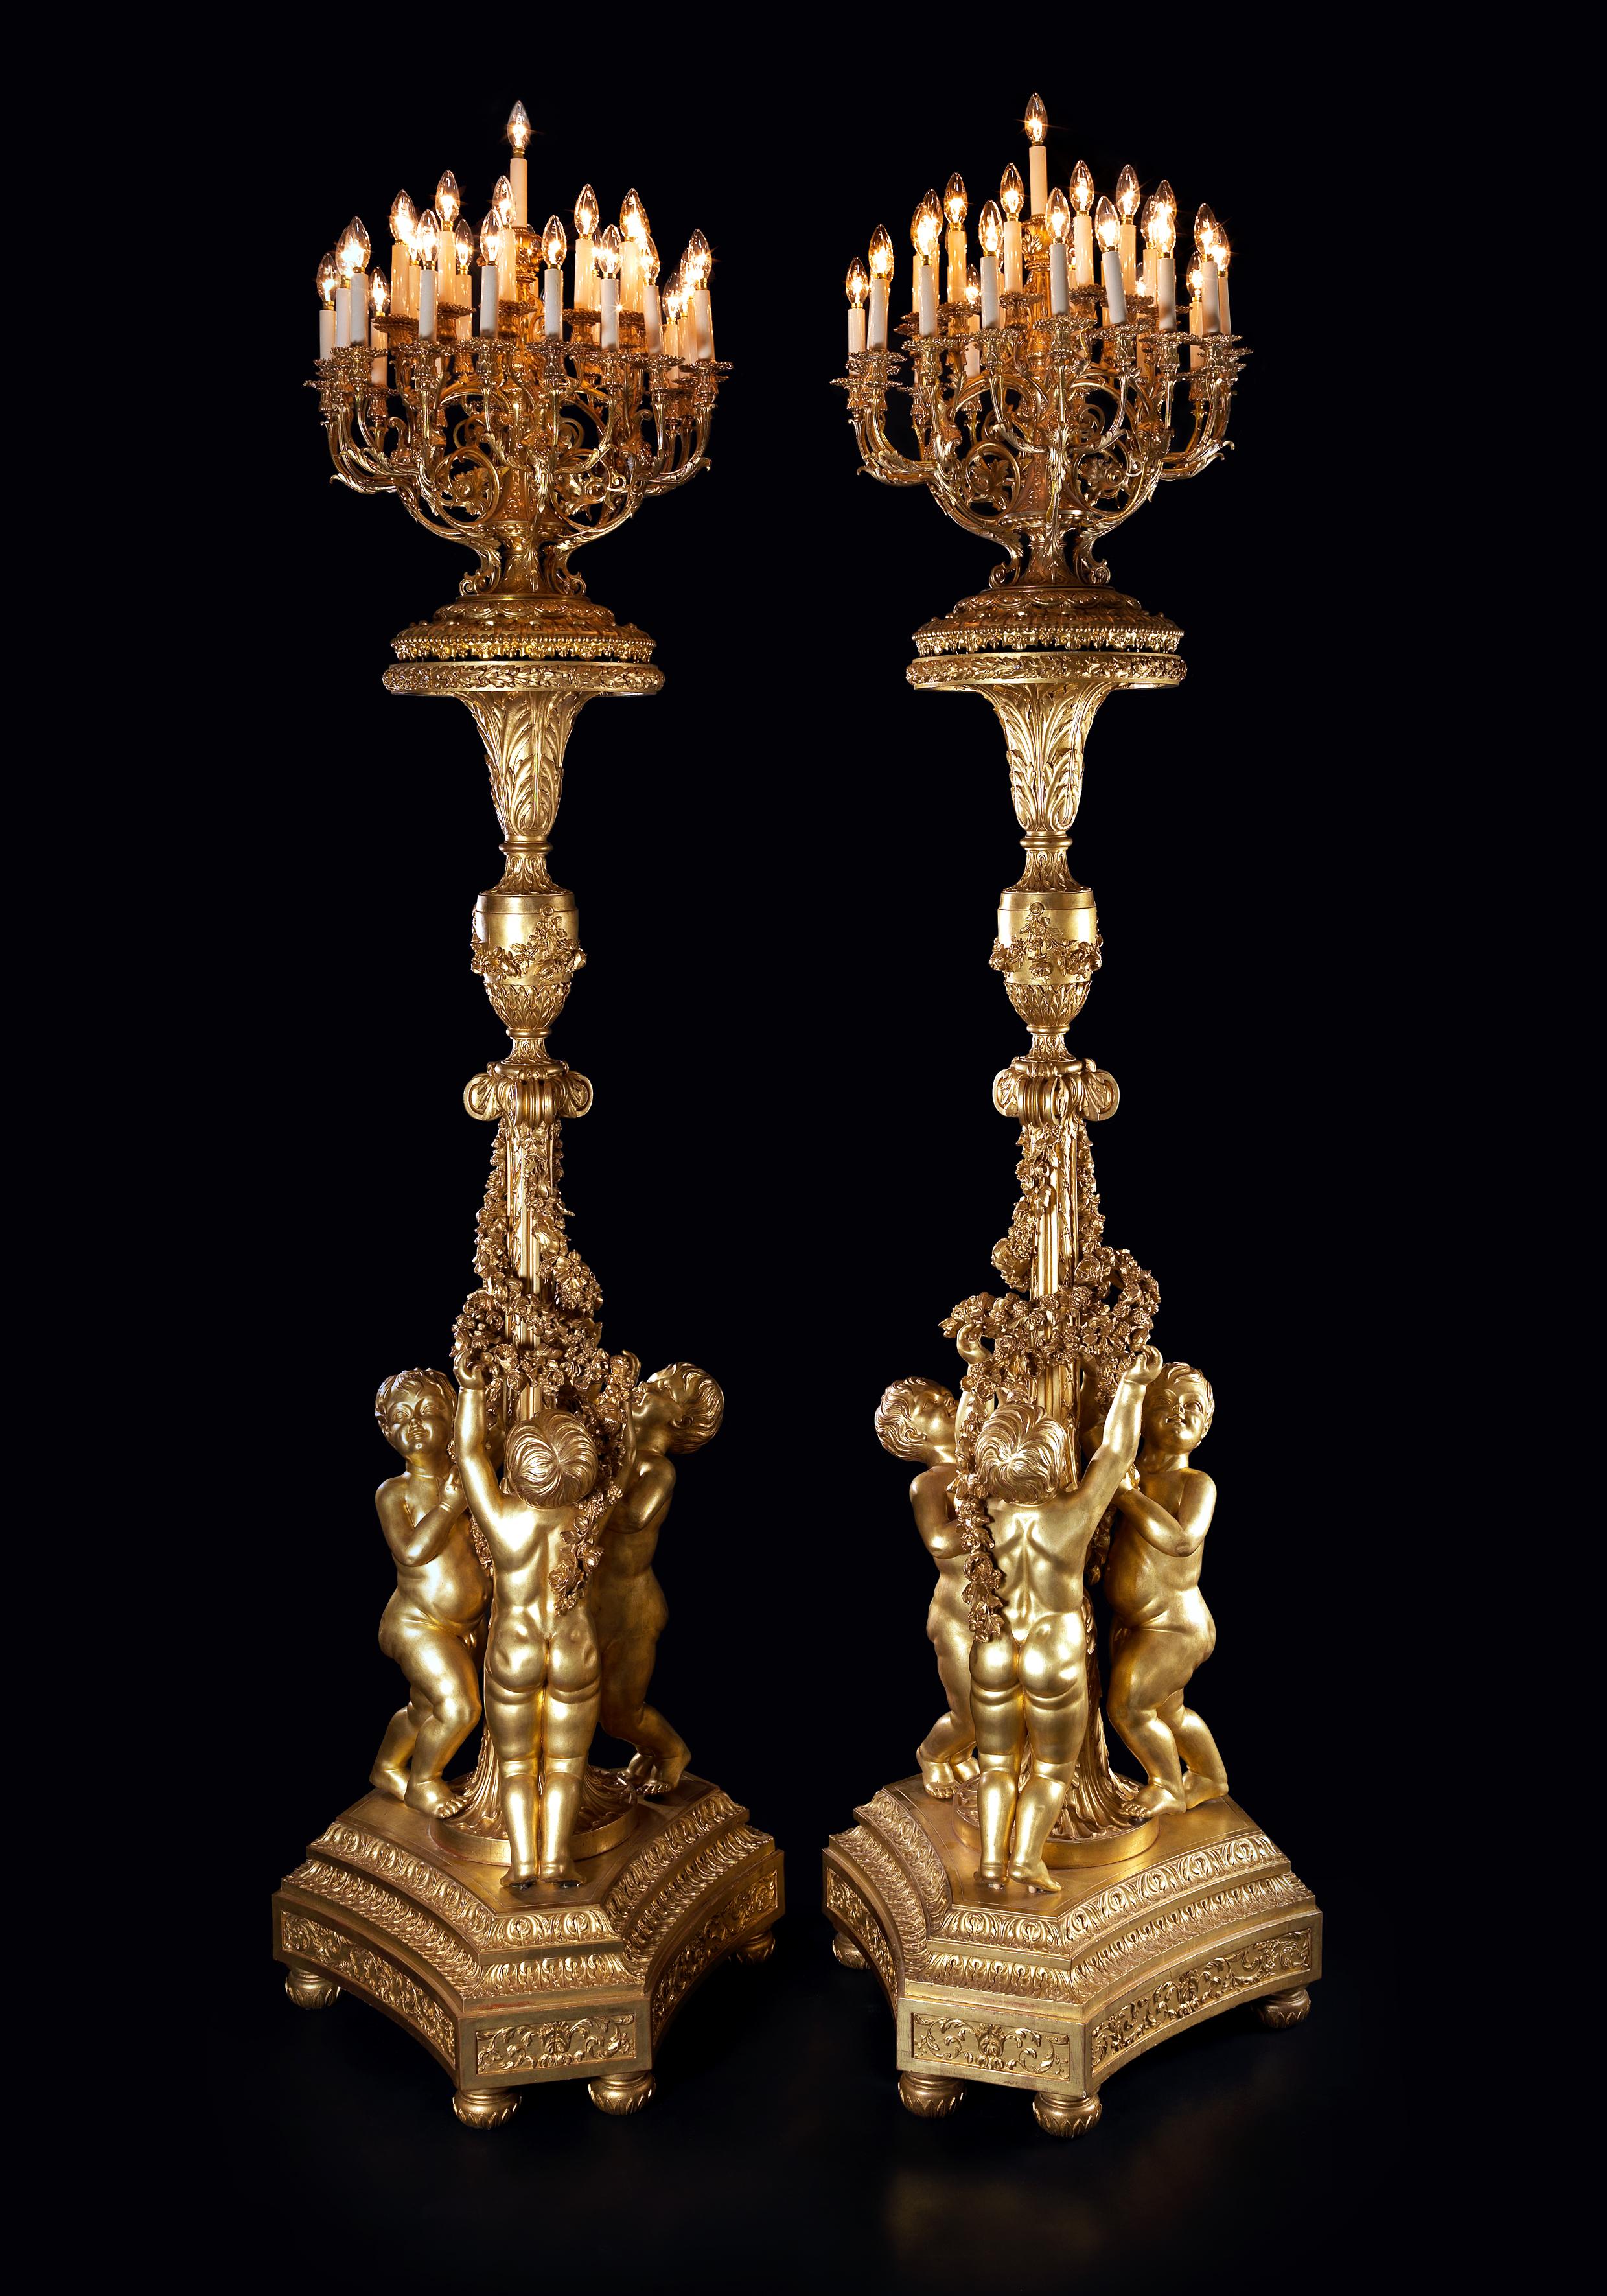 Ein bedeutendes Paar monumentaler Fackeln mit einunddreißig Lichtern aus vergoldetem Holz nach dem Modell von Jacques Gondoin für den Spiegelsaal des Schlosses von Versailles.

Frankreich, um 1870. 
 
Jede Fackel hat einen konkaven Sockel mit